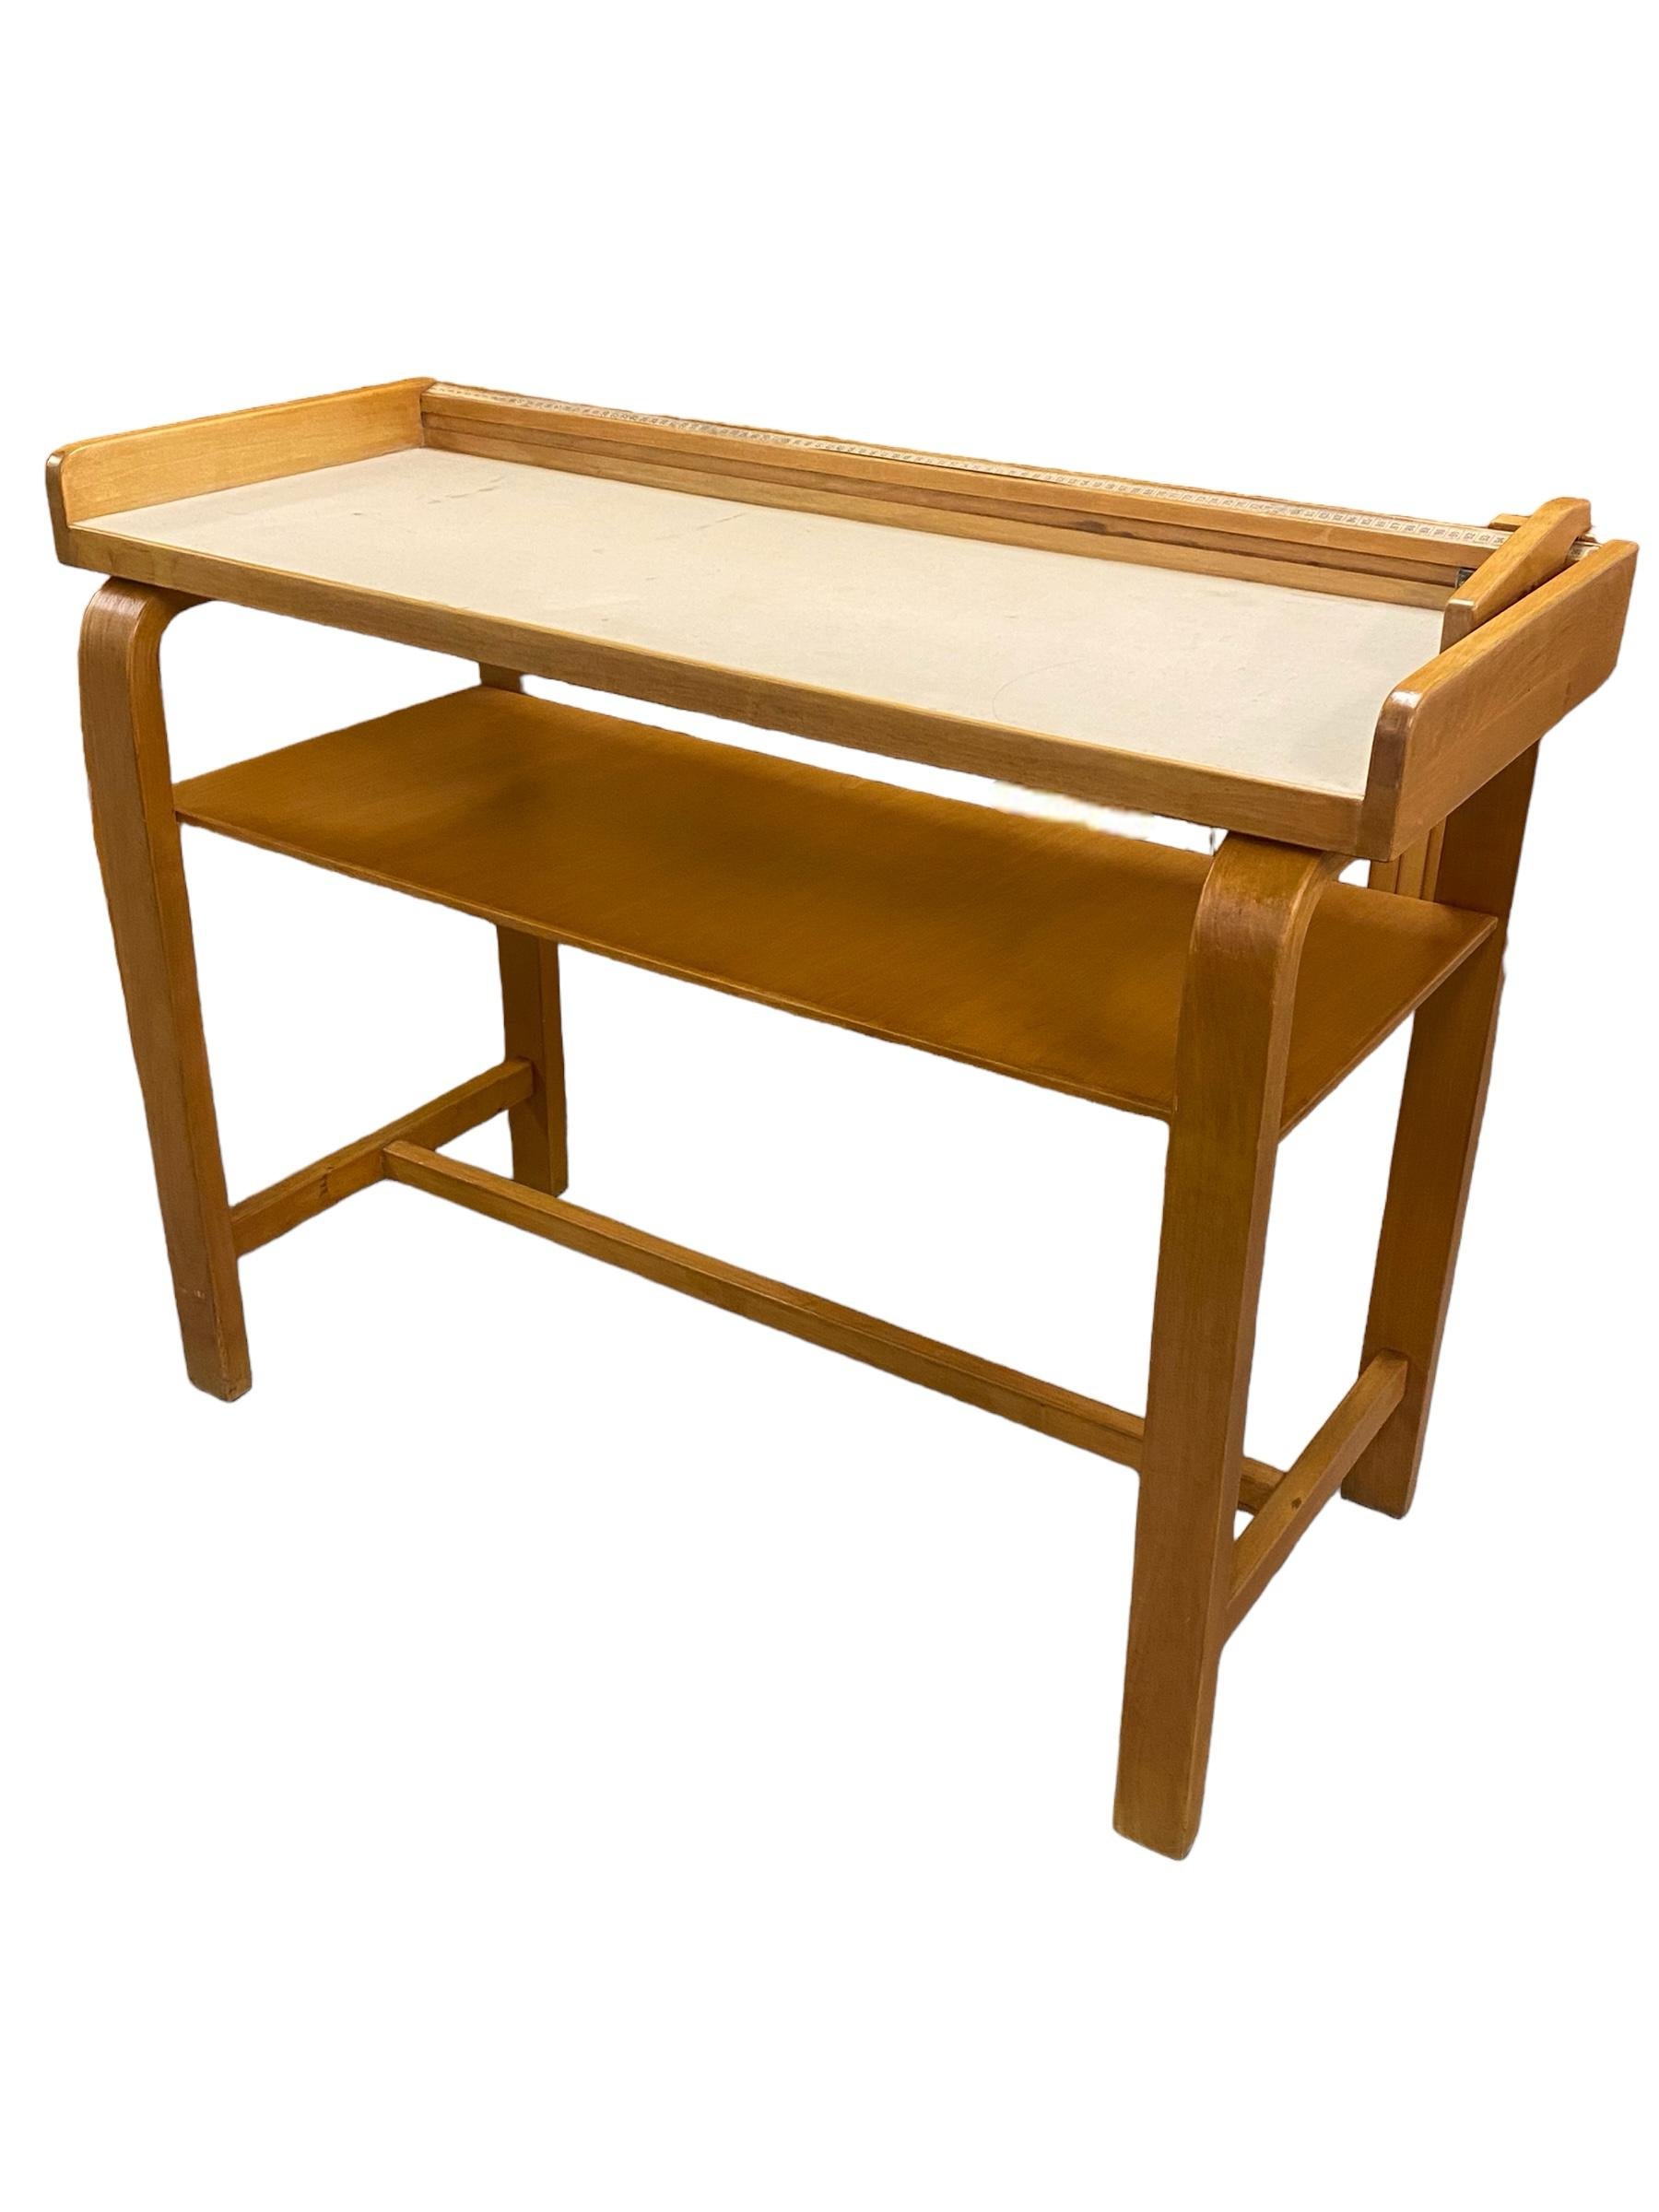 Cette table a d'abord été conçue comme table de mesure pour les bébés dans les hôpitaux. Il est équipé d'une unité de mesure métrique et d'une pièce en bois coulissante qui s'ajuste à la longueur des bébés.

En plus d'être un véritable must have